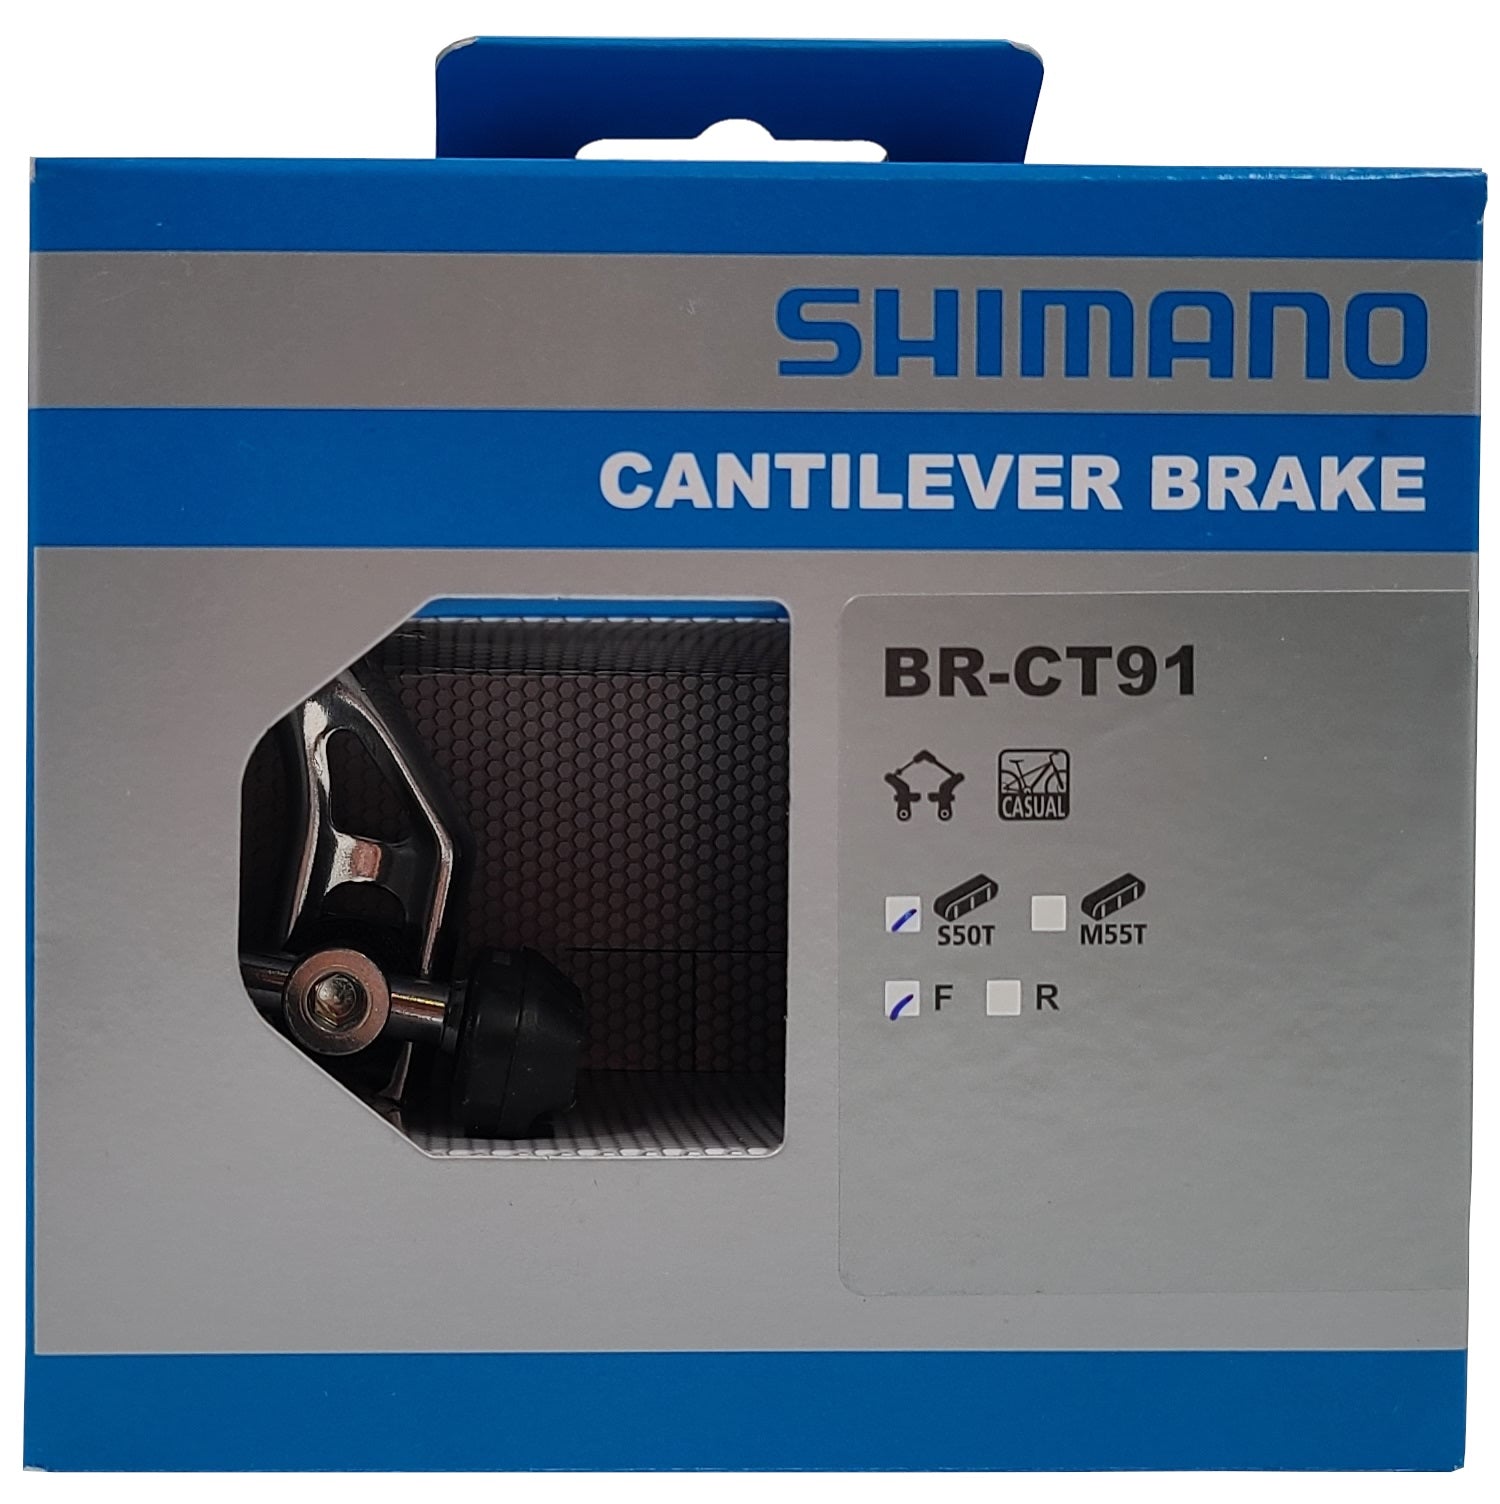 Shimano Altus BR-CT91 Cantilever Brake